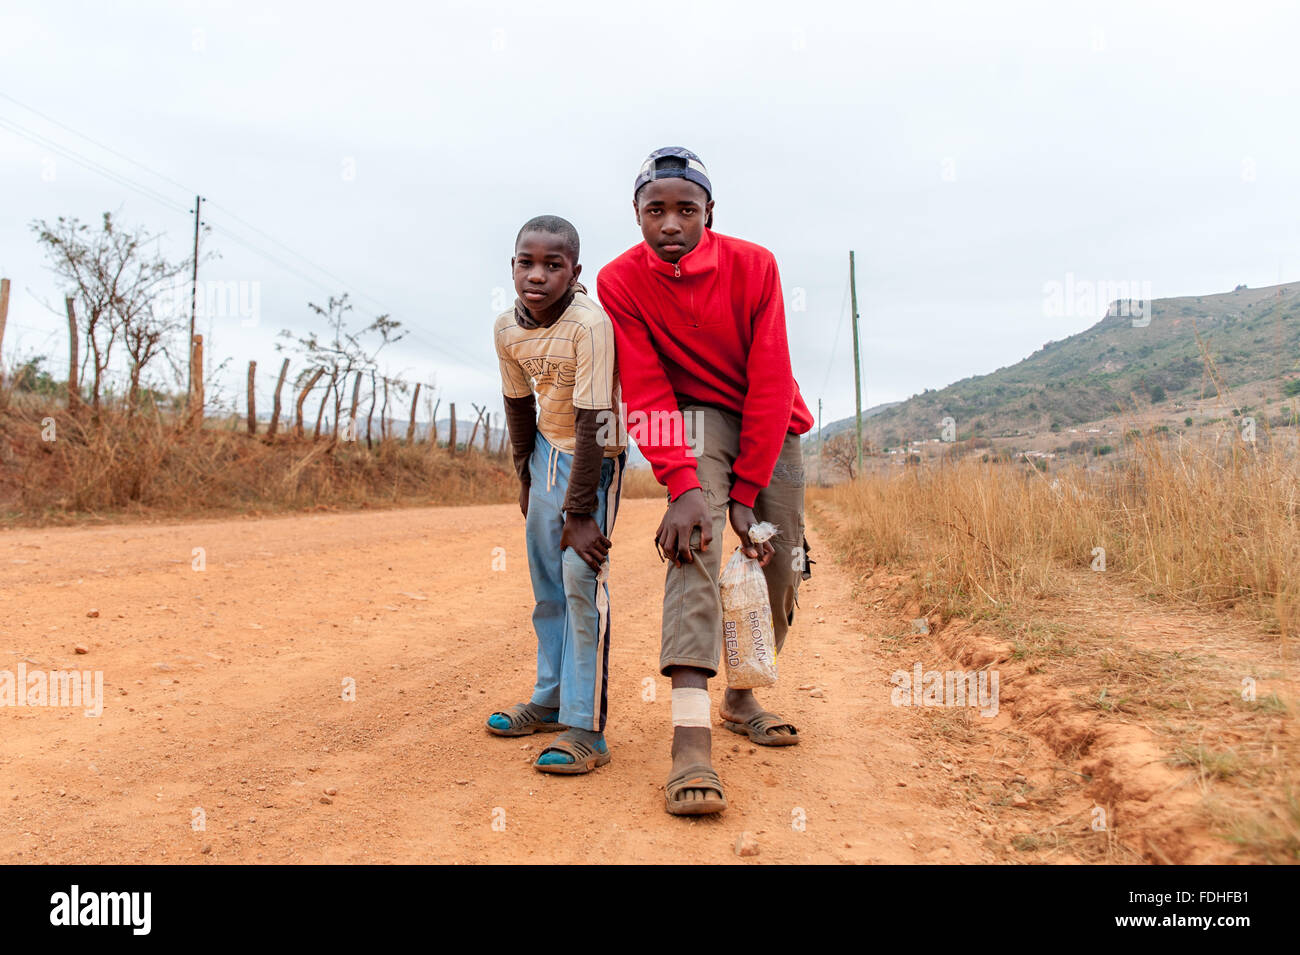 Zwei jungen stehen in einem Feldweg in der Hhohho Region von Swasiland, Afrika. Stockfoto